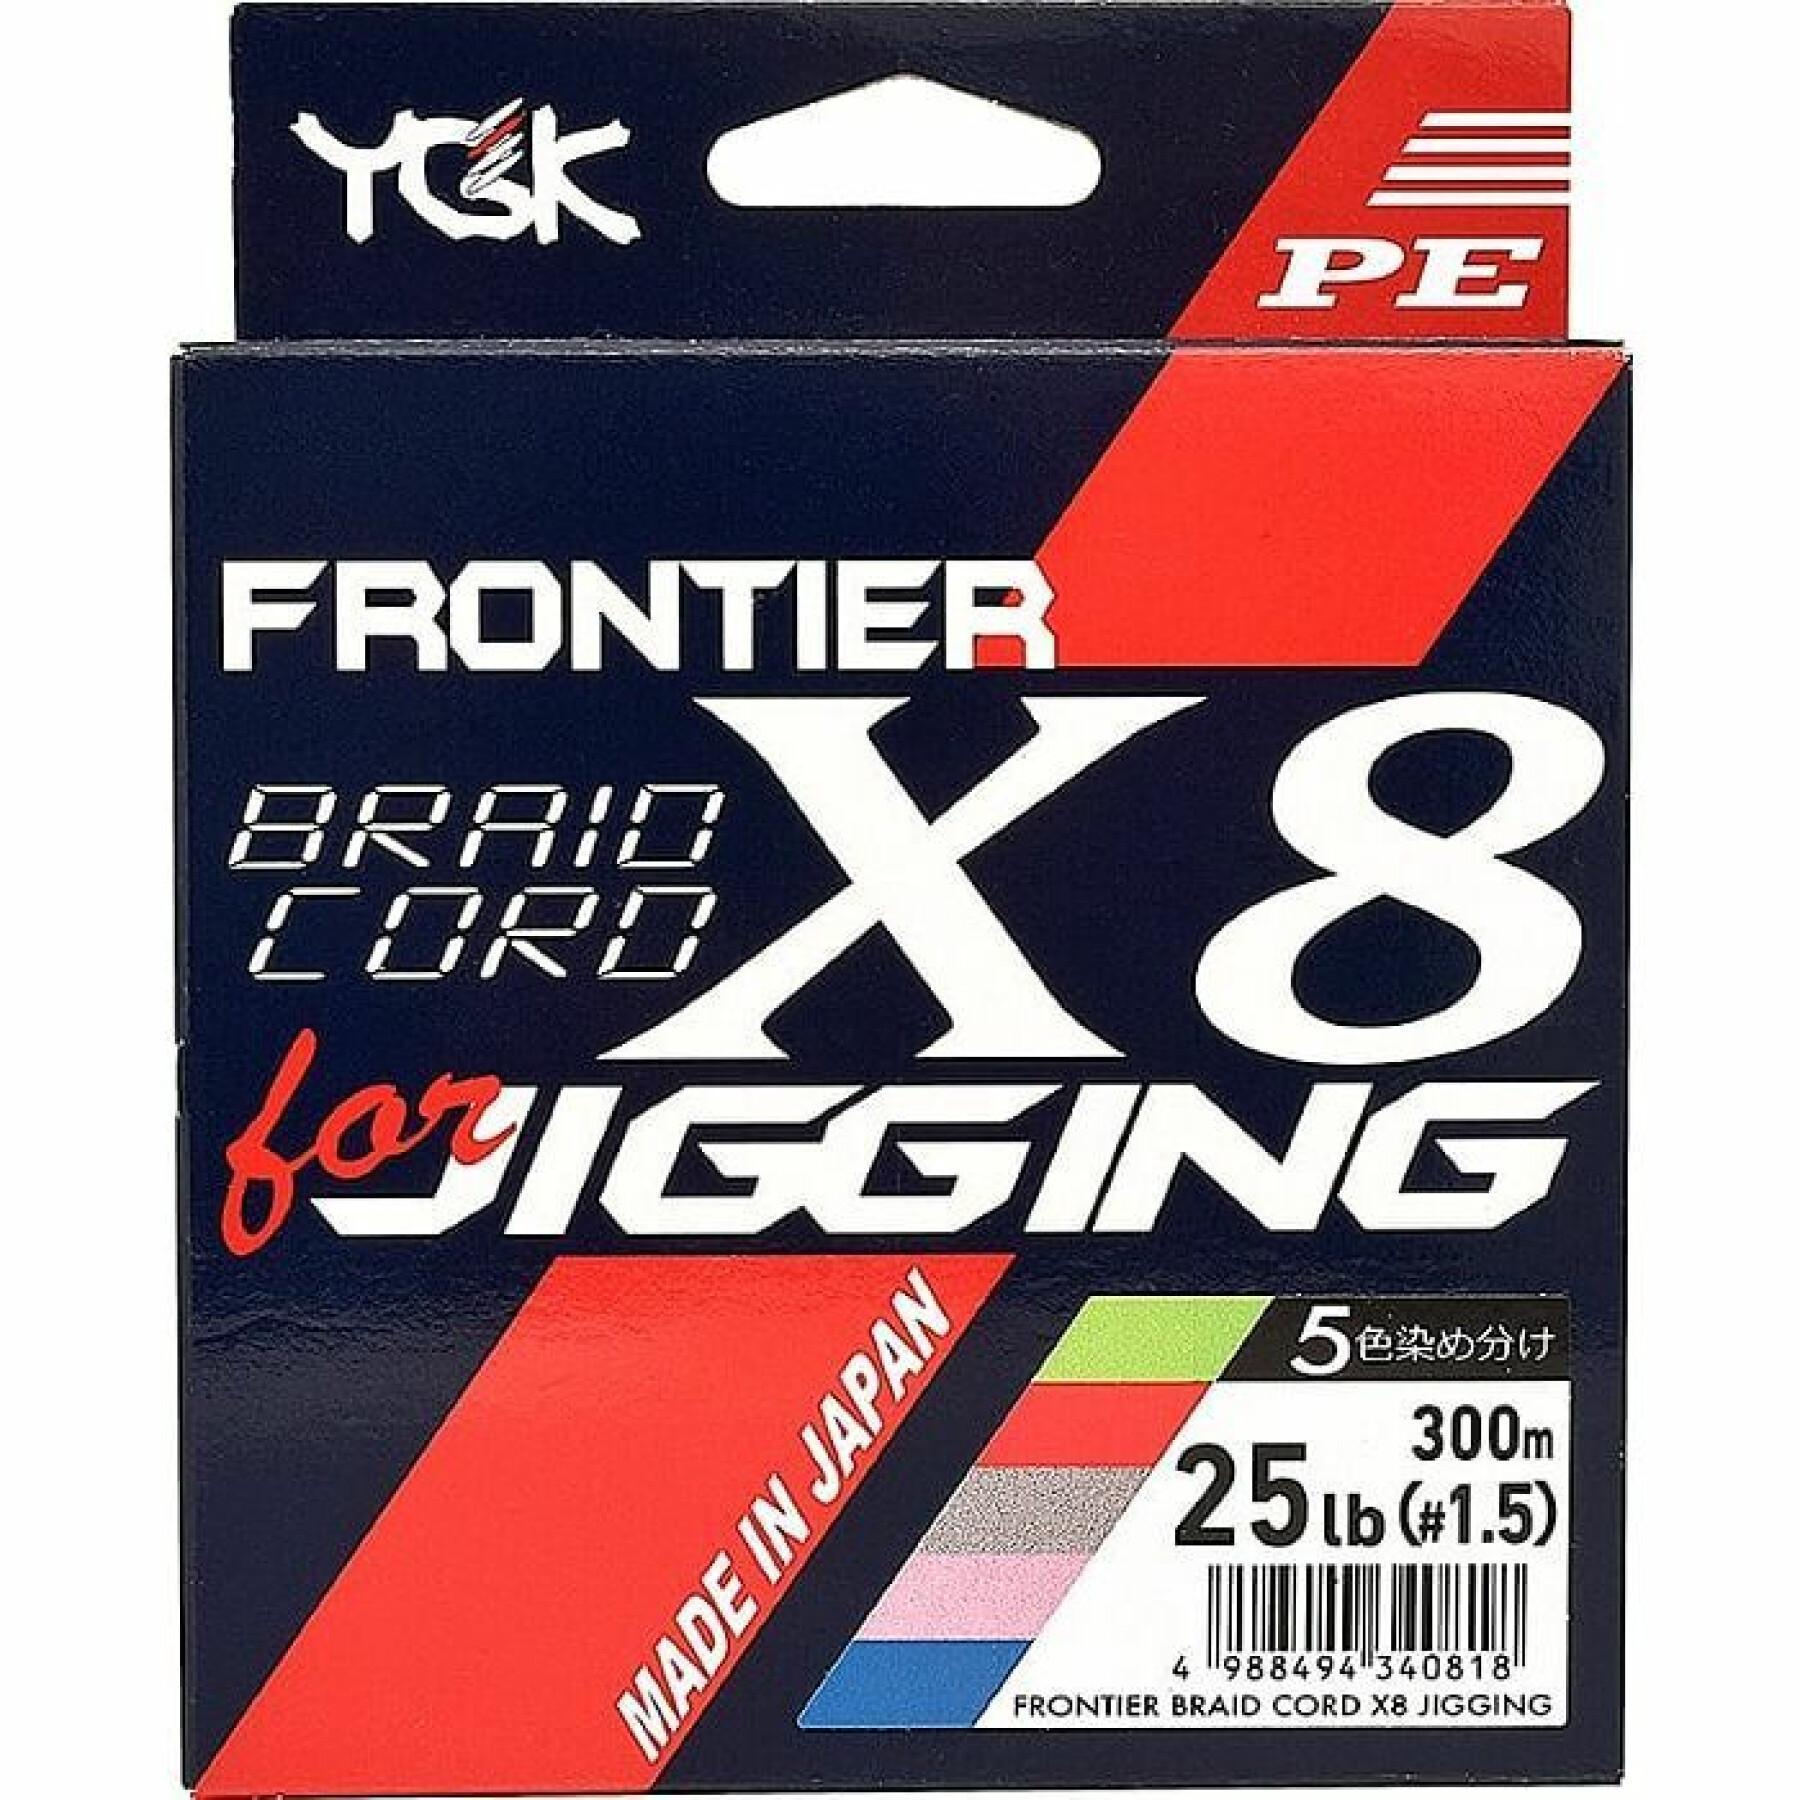 Trenza de 8 hilos YGK Frontier Braid Cord 200m